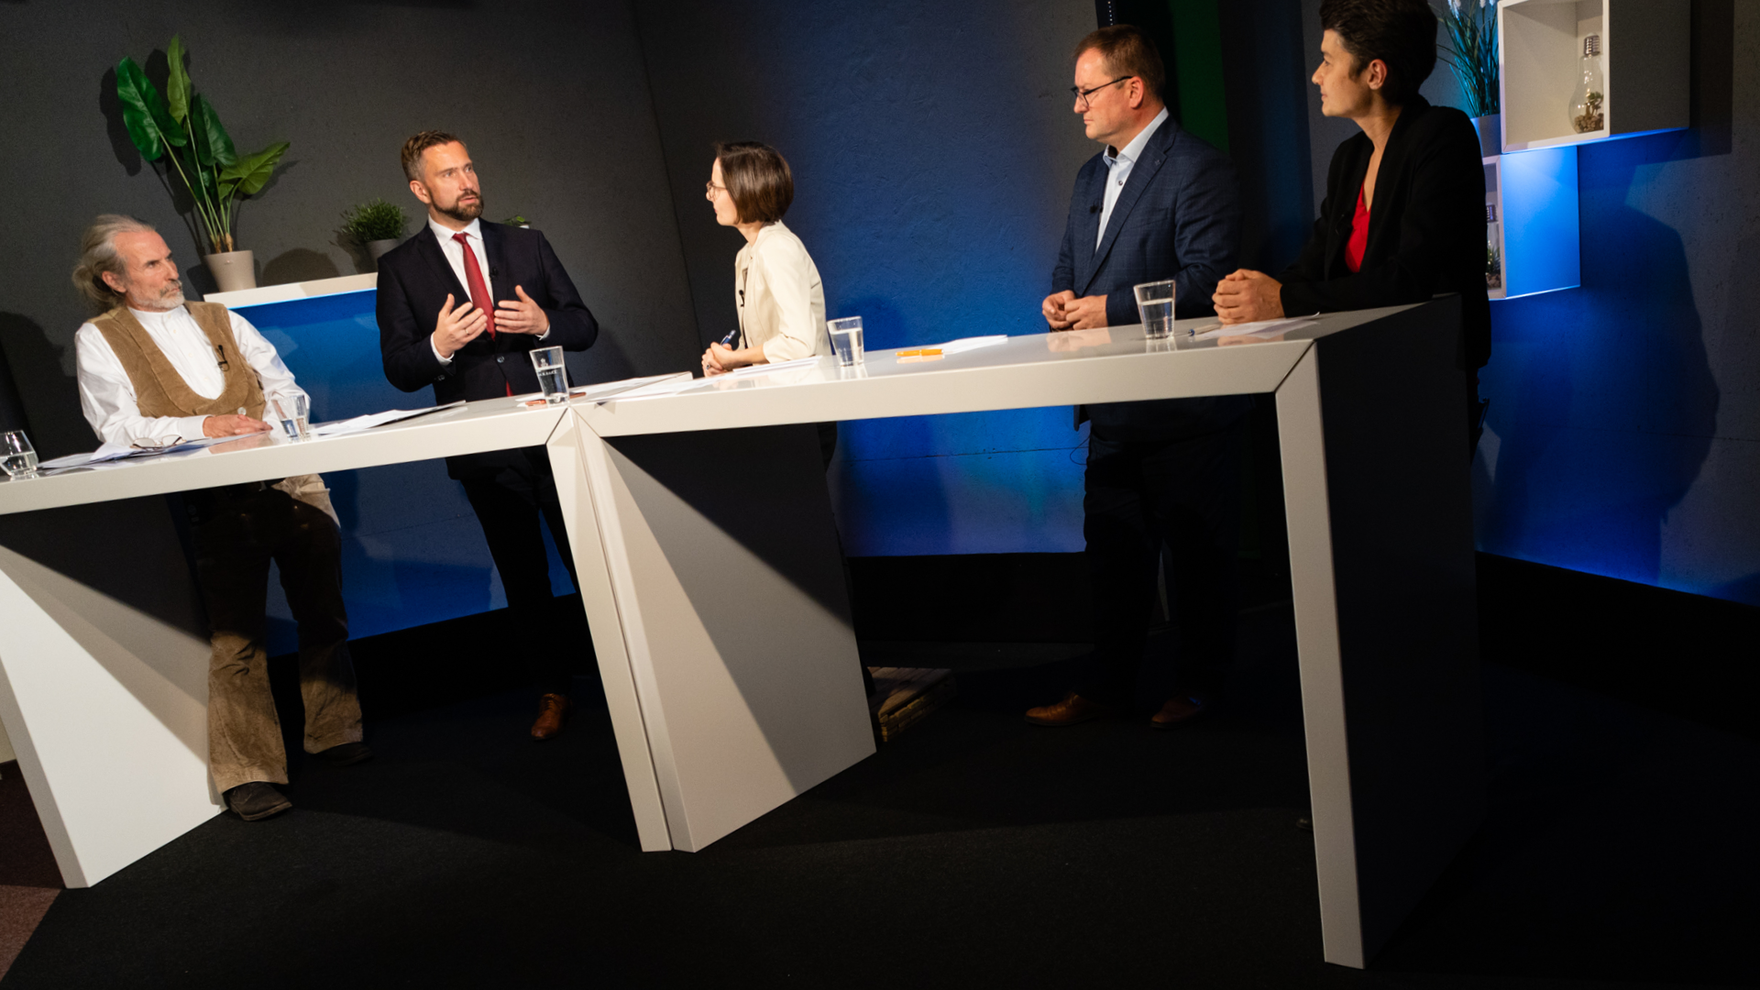 Staatsminister Martin Dulig mit weiteren Studiogästen im Wirtschaftstalk "Martin Dulig | Konkret"